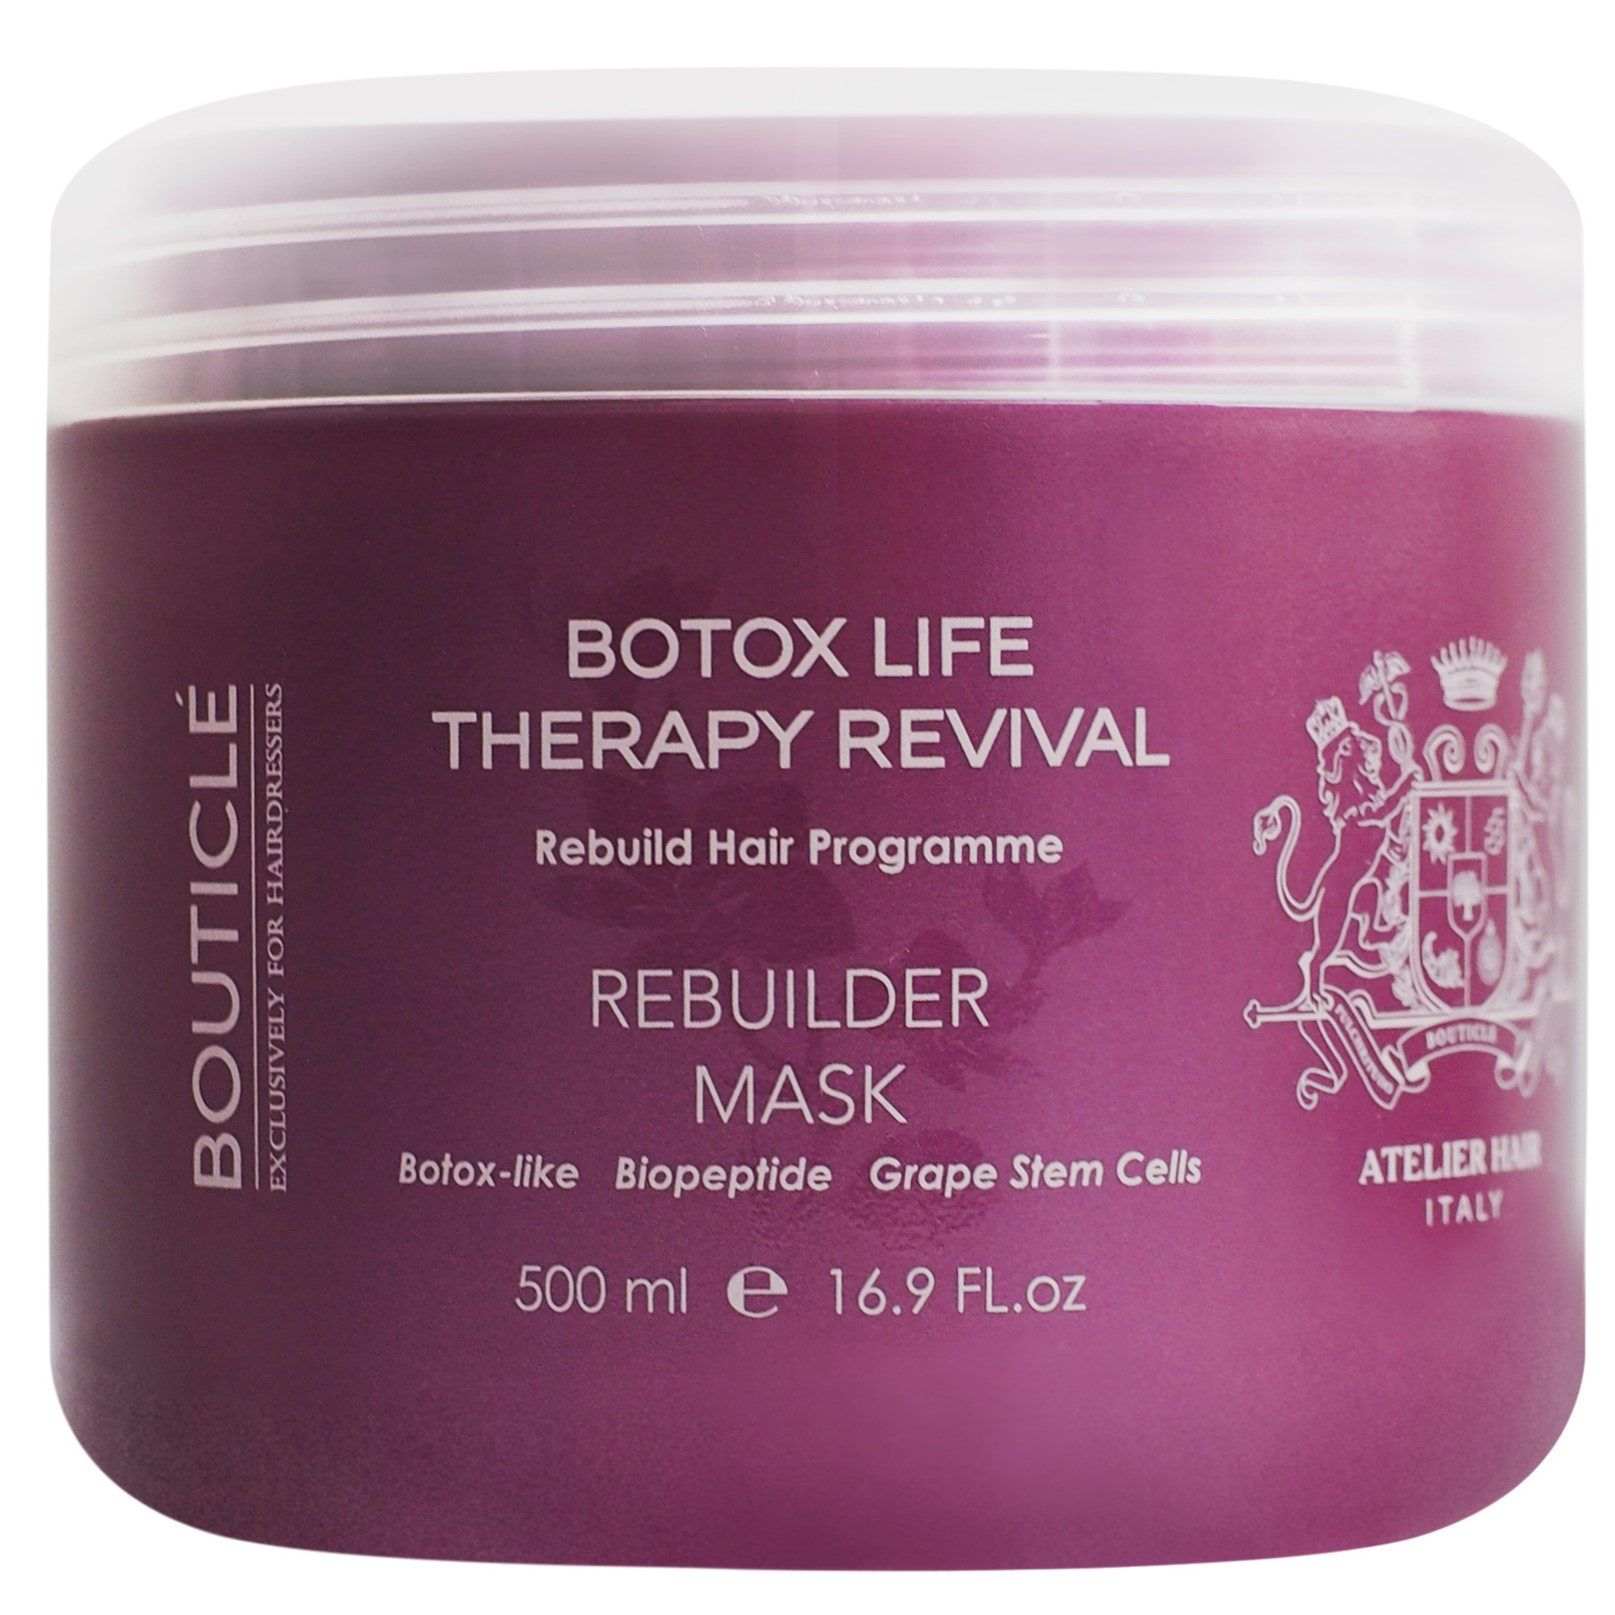 BOUTICLE, Ботокс восстанавливающая маска для химически поврежденных волос  Botox Life, 500 мл.